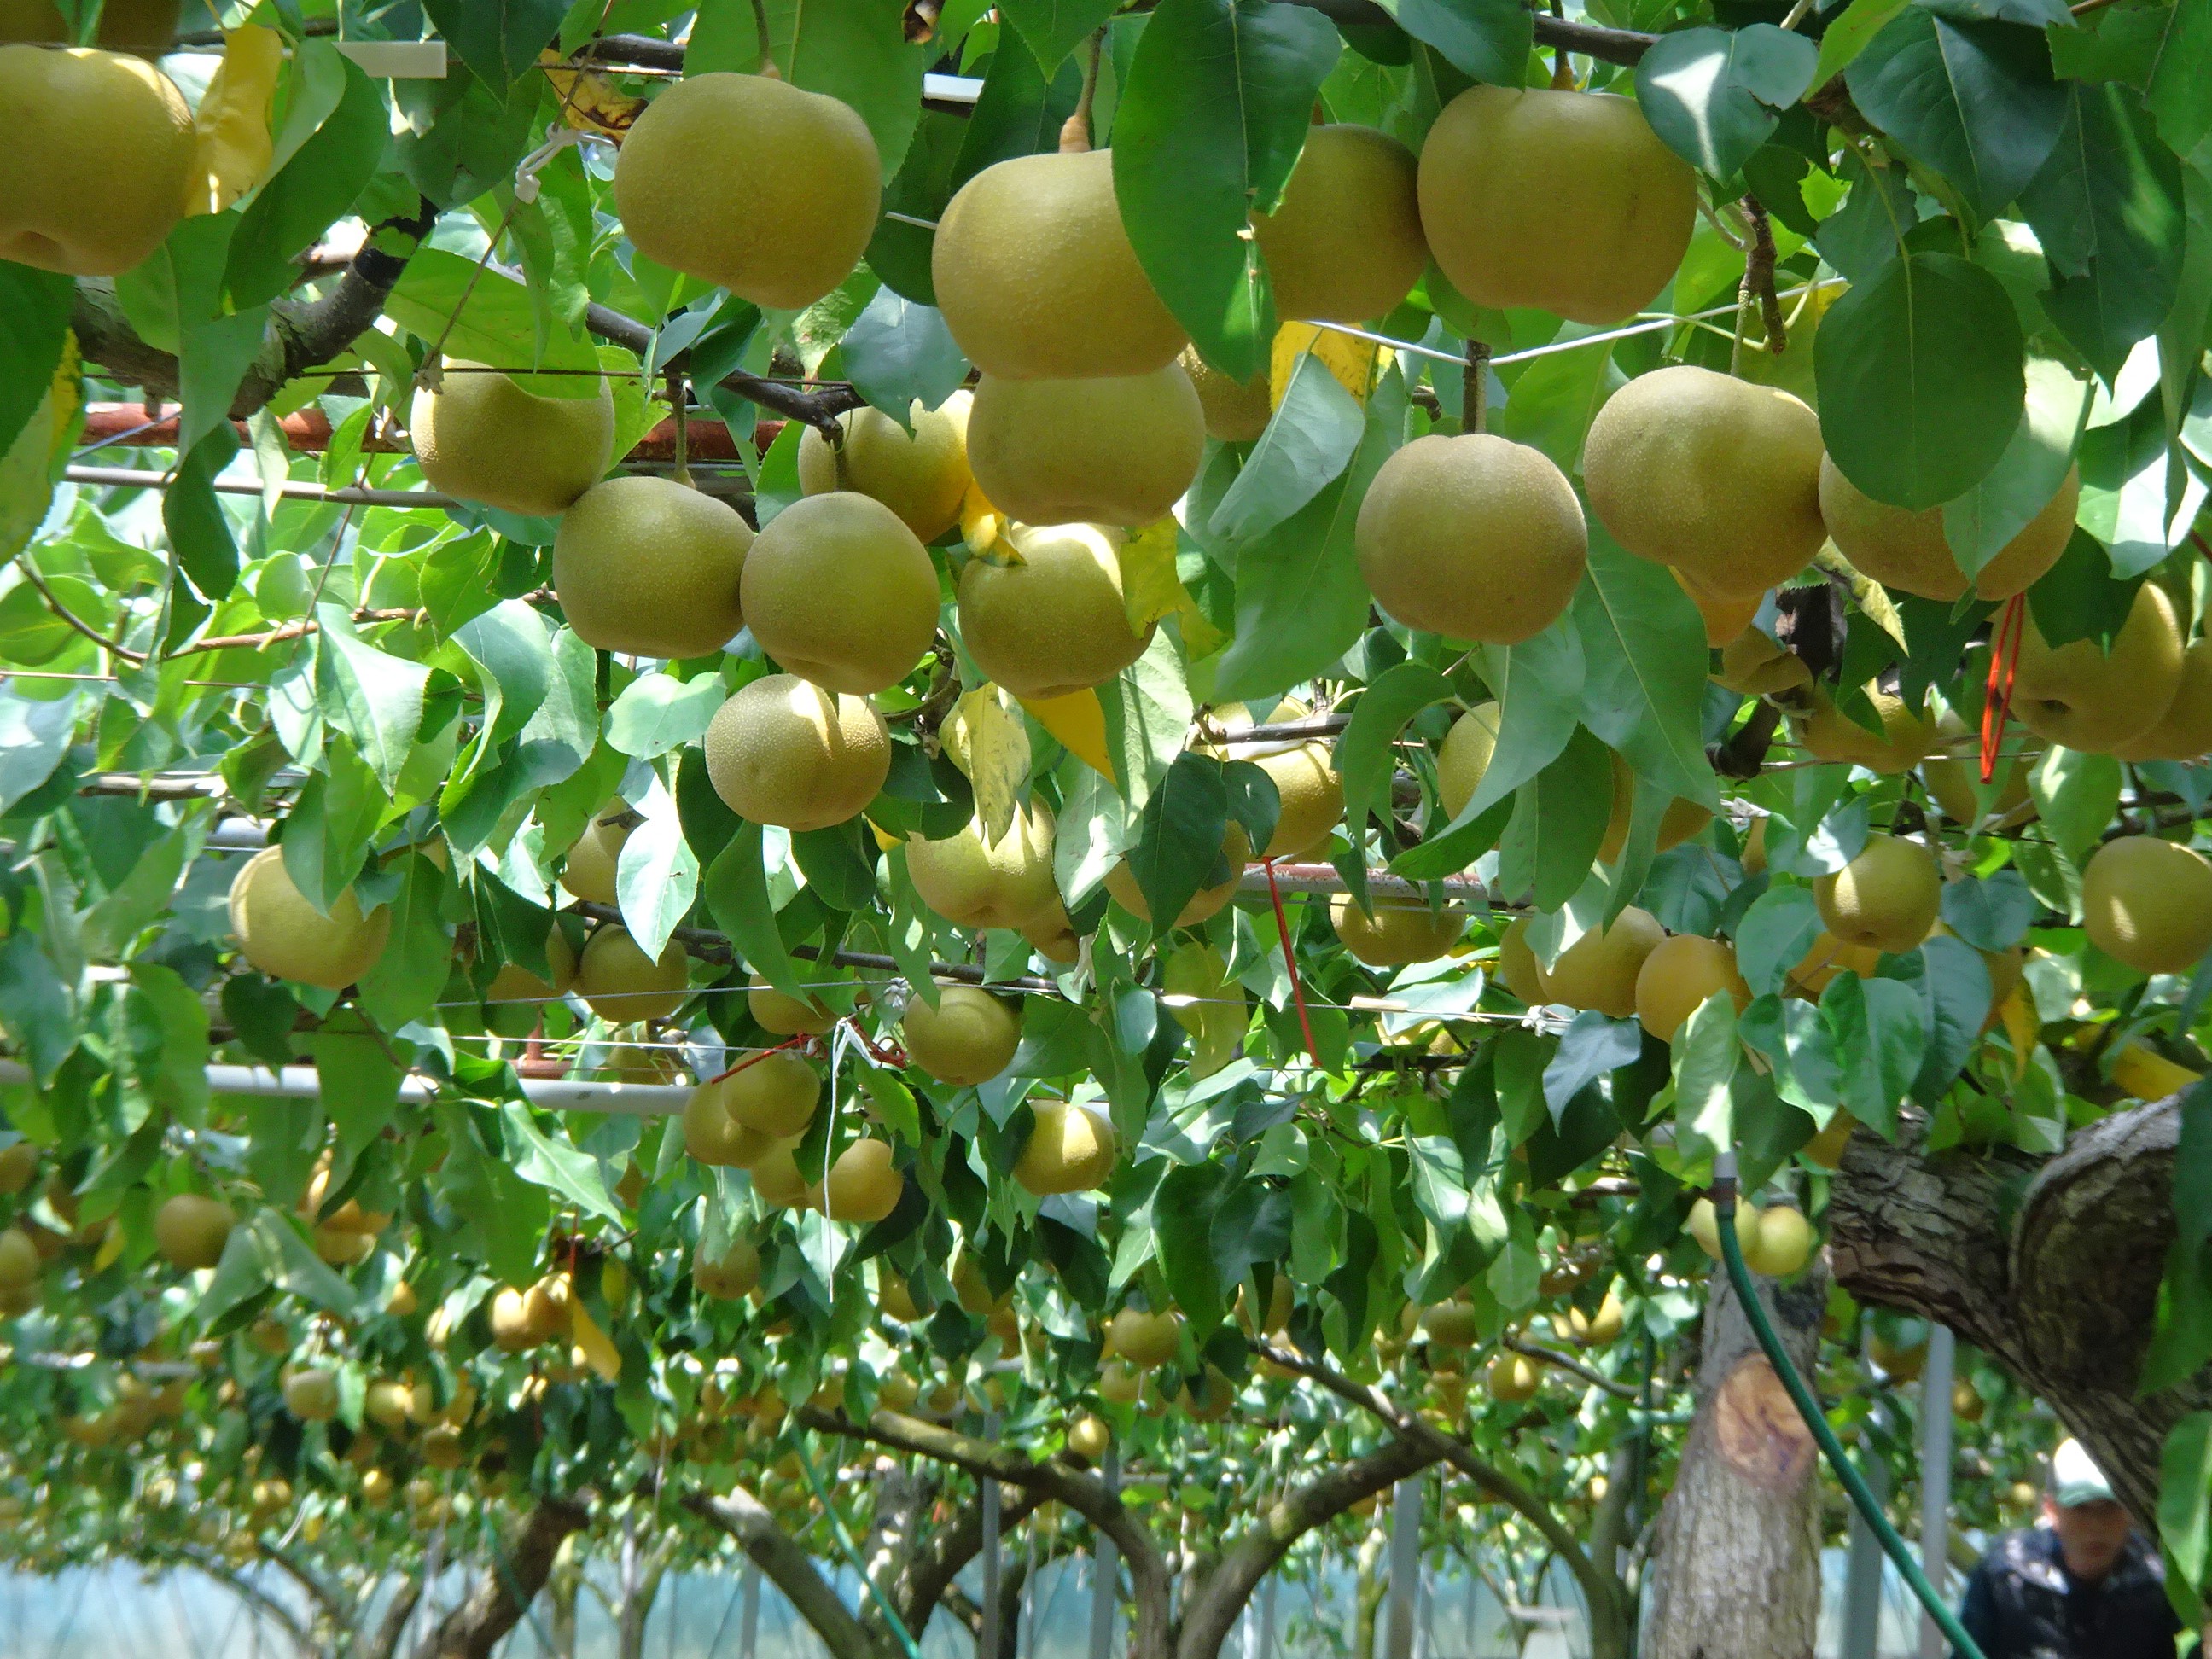 伊万里産梨の収穫が始まっています!